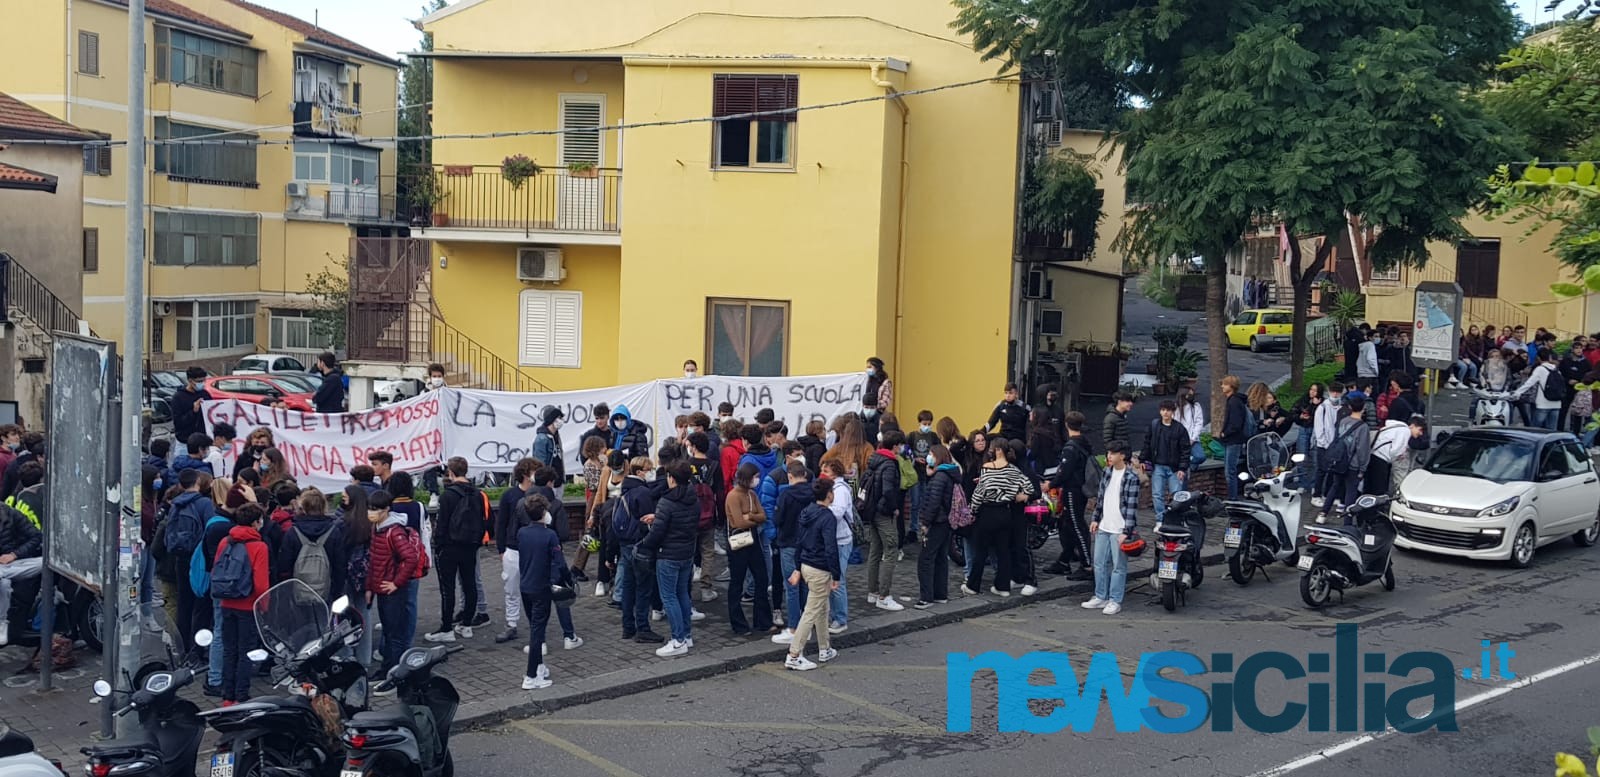 Una scuola sicura, il “Galilei” si unisce al coro unanime degli studenti siciliani – FOTO e VIDEO